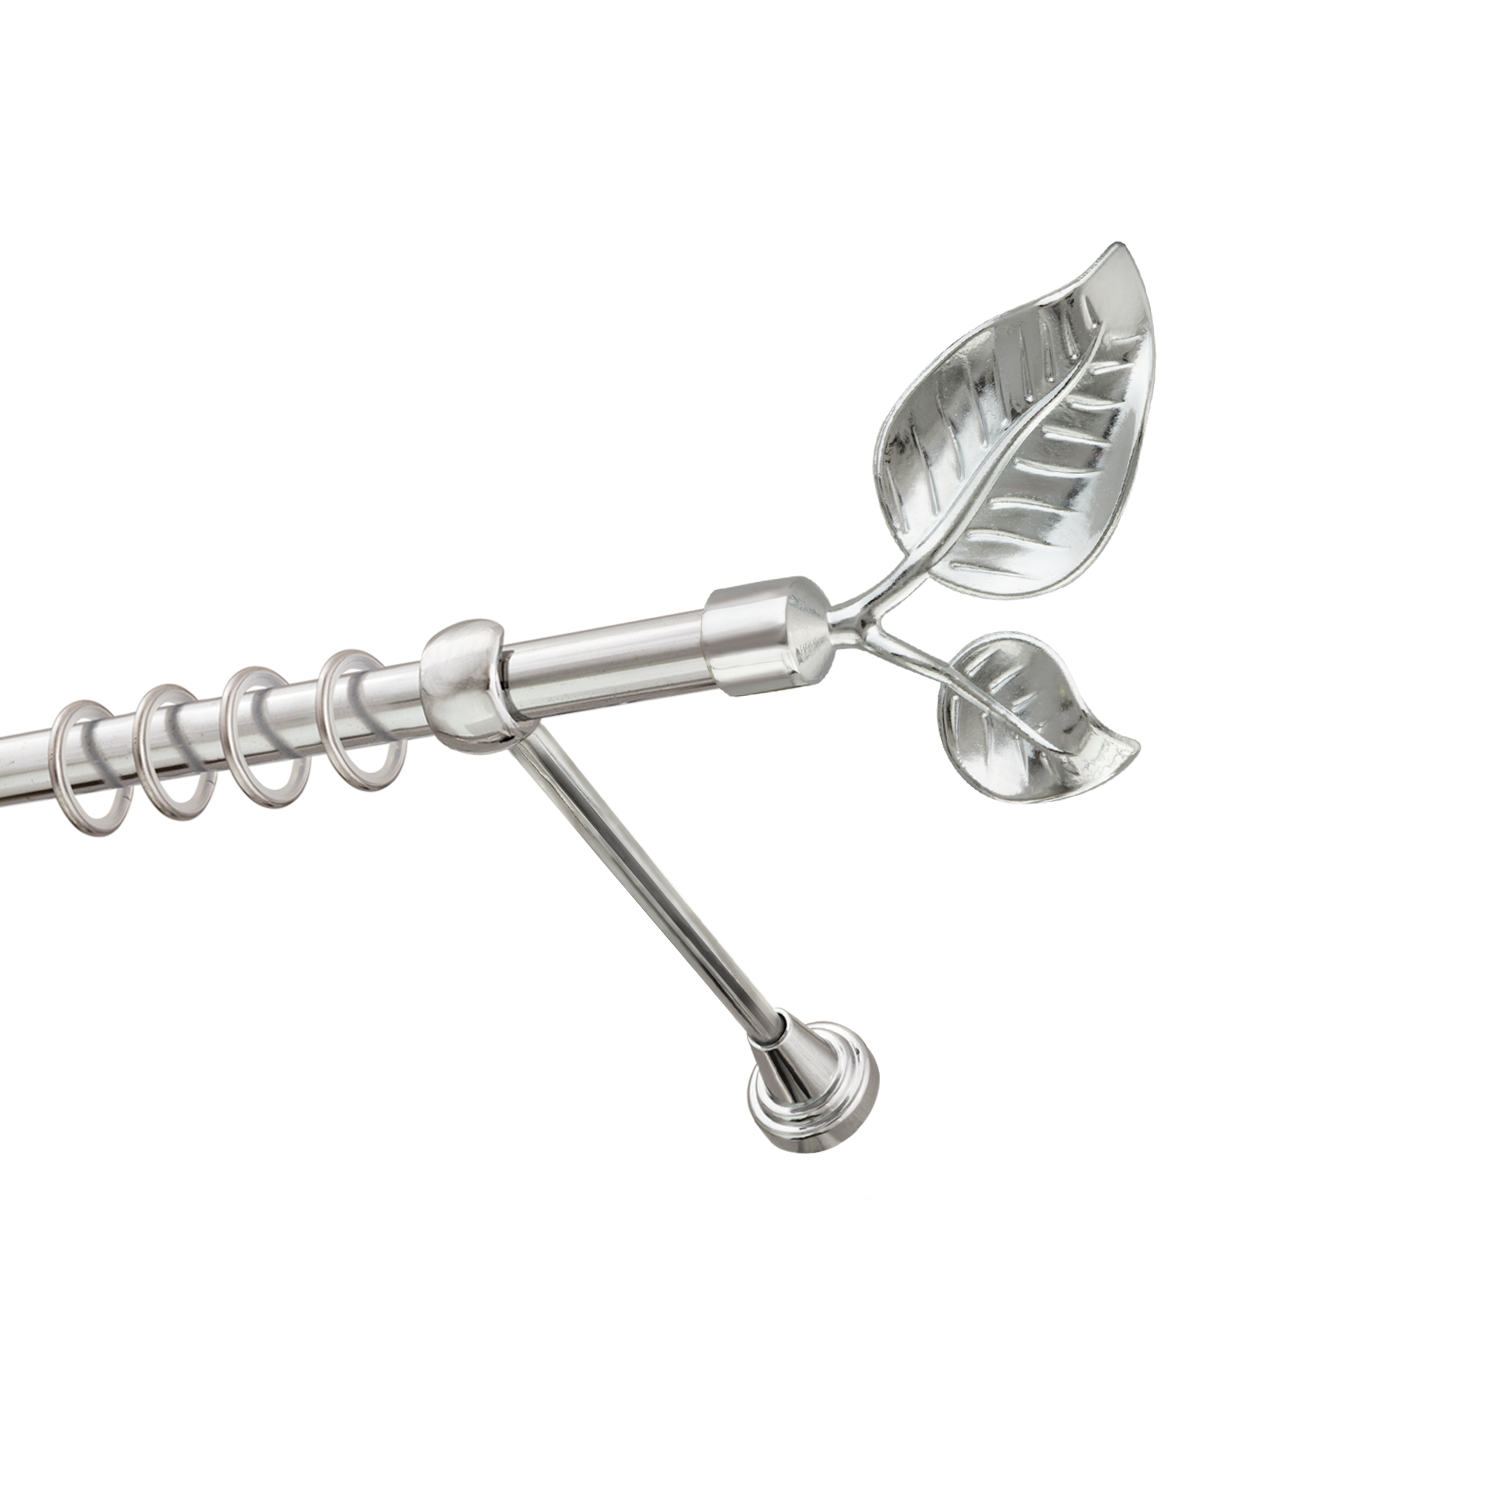 Металлический карниз для штор Тропик, однорядный 16 мм, серебро, гладкая штанга, длина 140 см - фото Wikidecor.ru